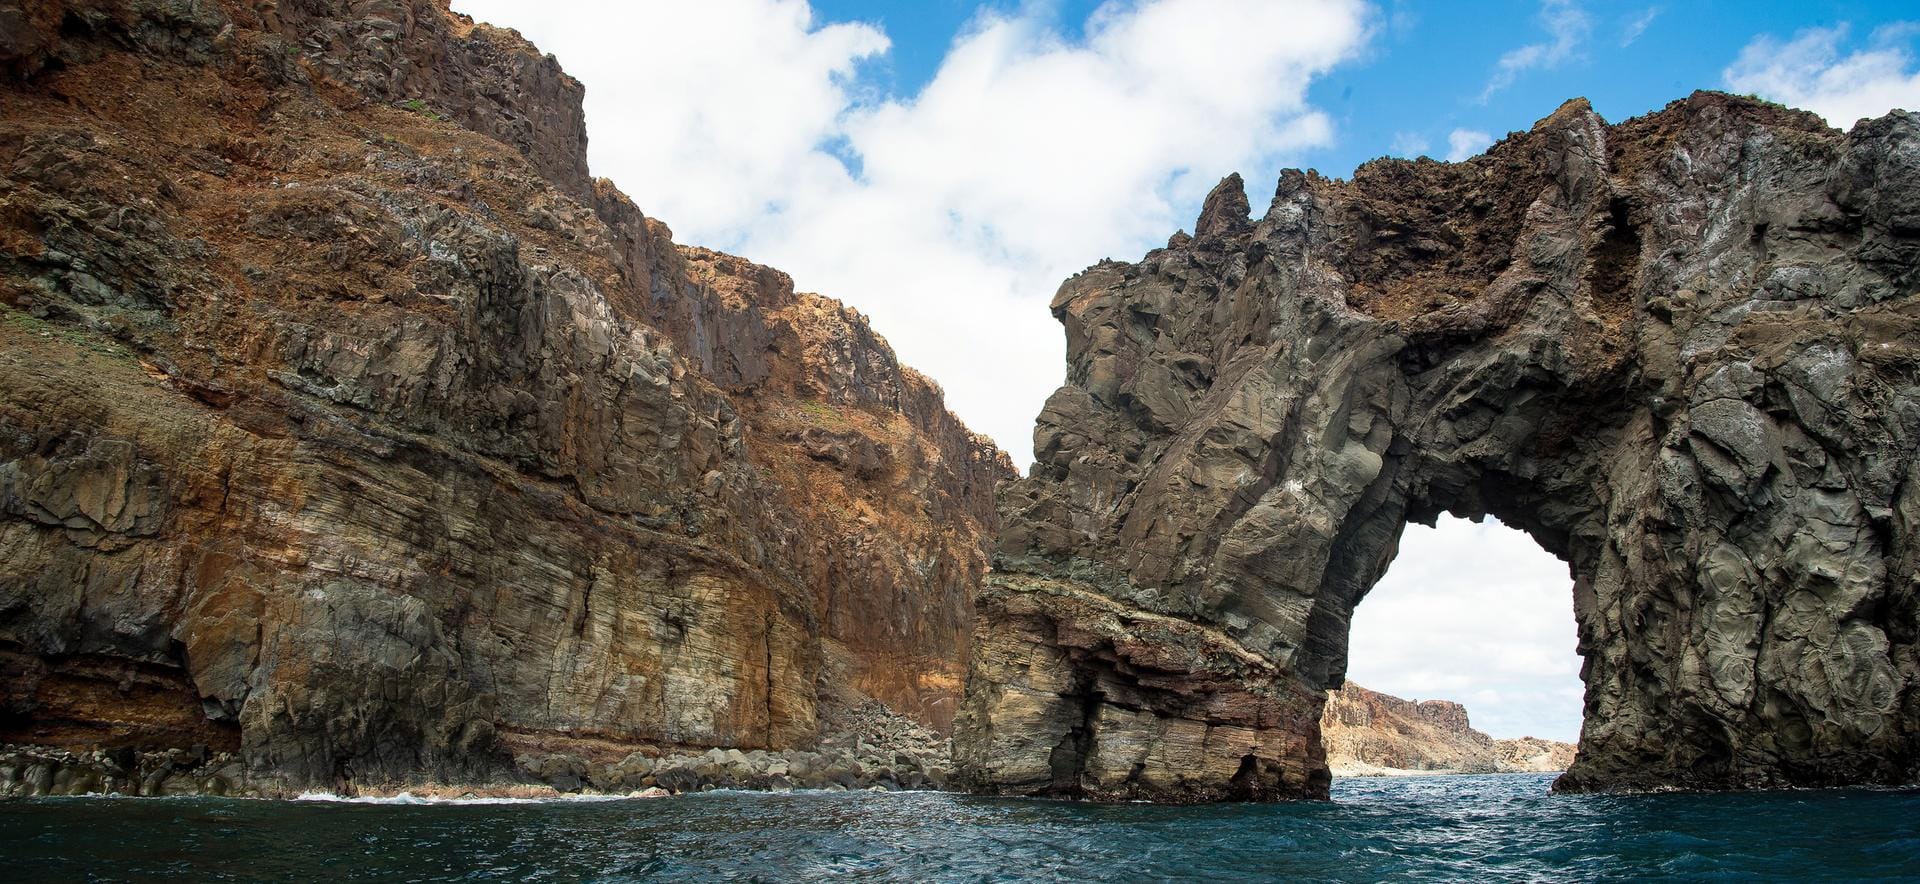 Die Insel Cabo Pearce Socorro, die ein Teil der Revillagigedo-Inselgruppe in Mexiko ist. Die Inselgruppe steht nun auf der Welterbeliste.